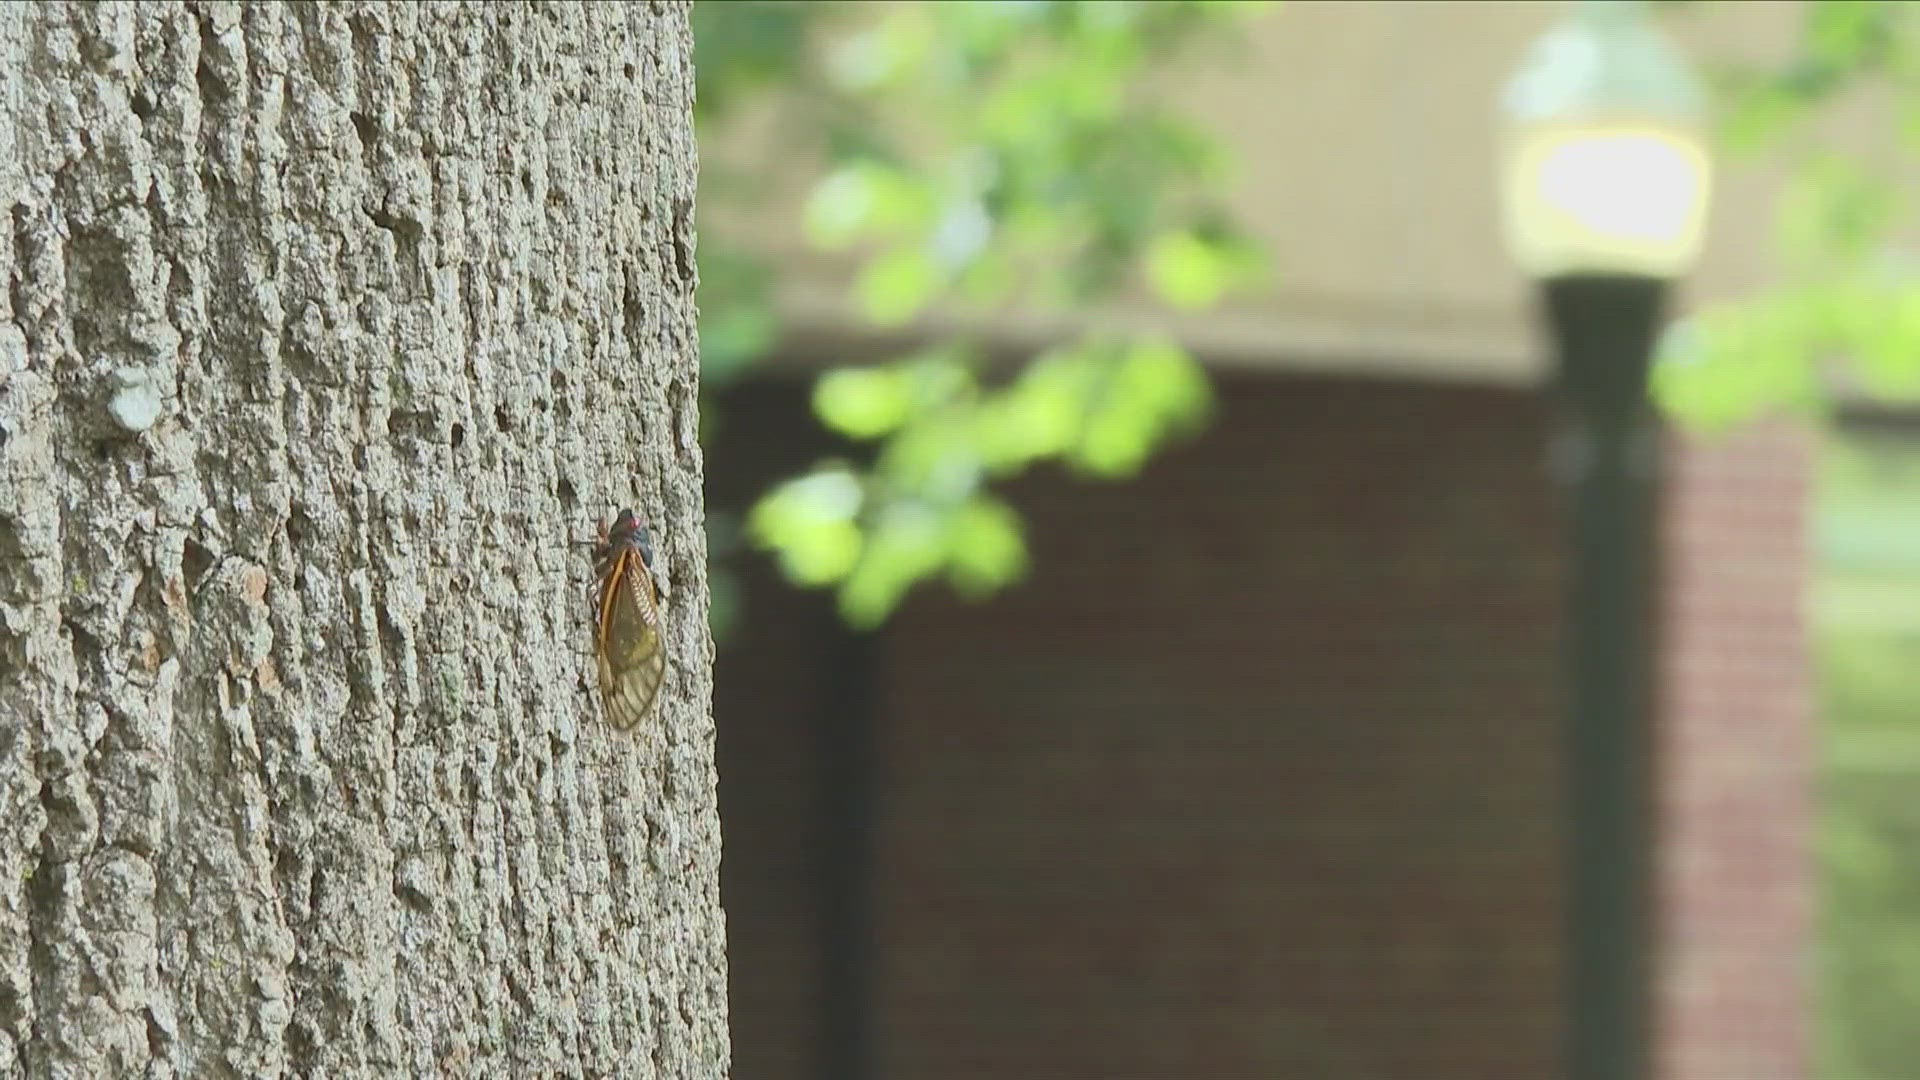 The noise that cicadas emit reach 80 to 100 decibels.